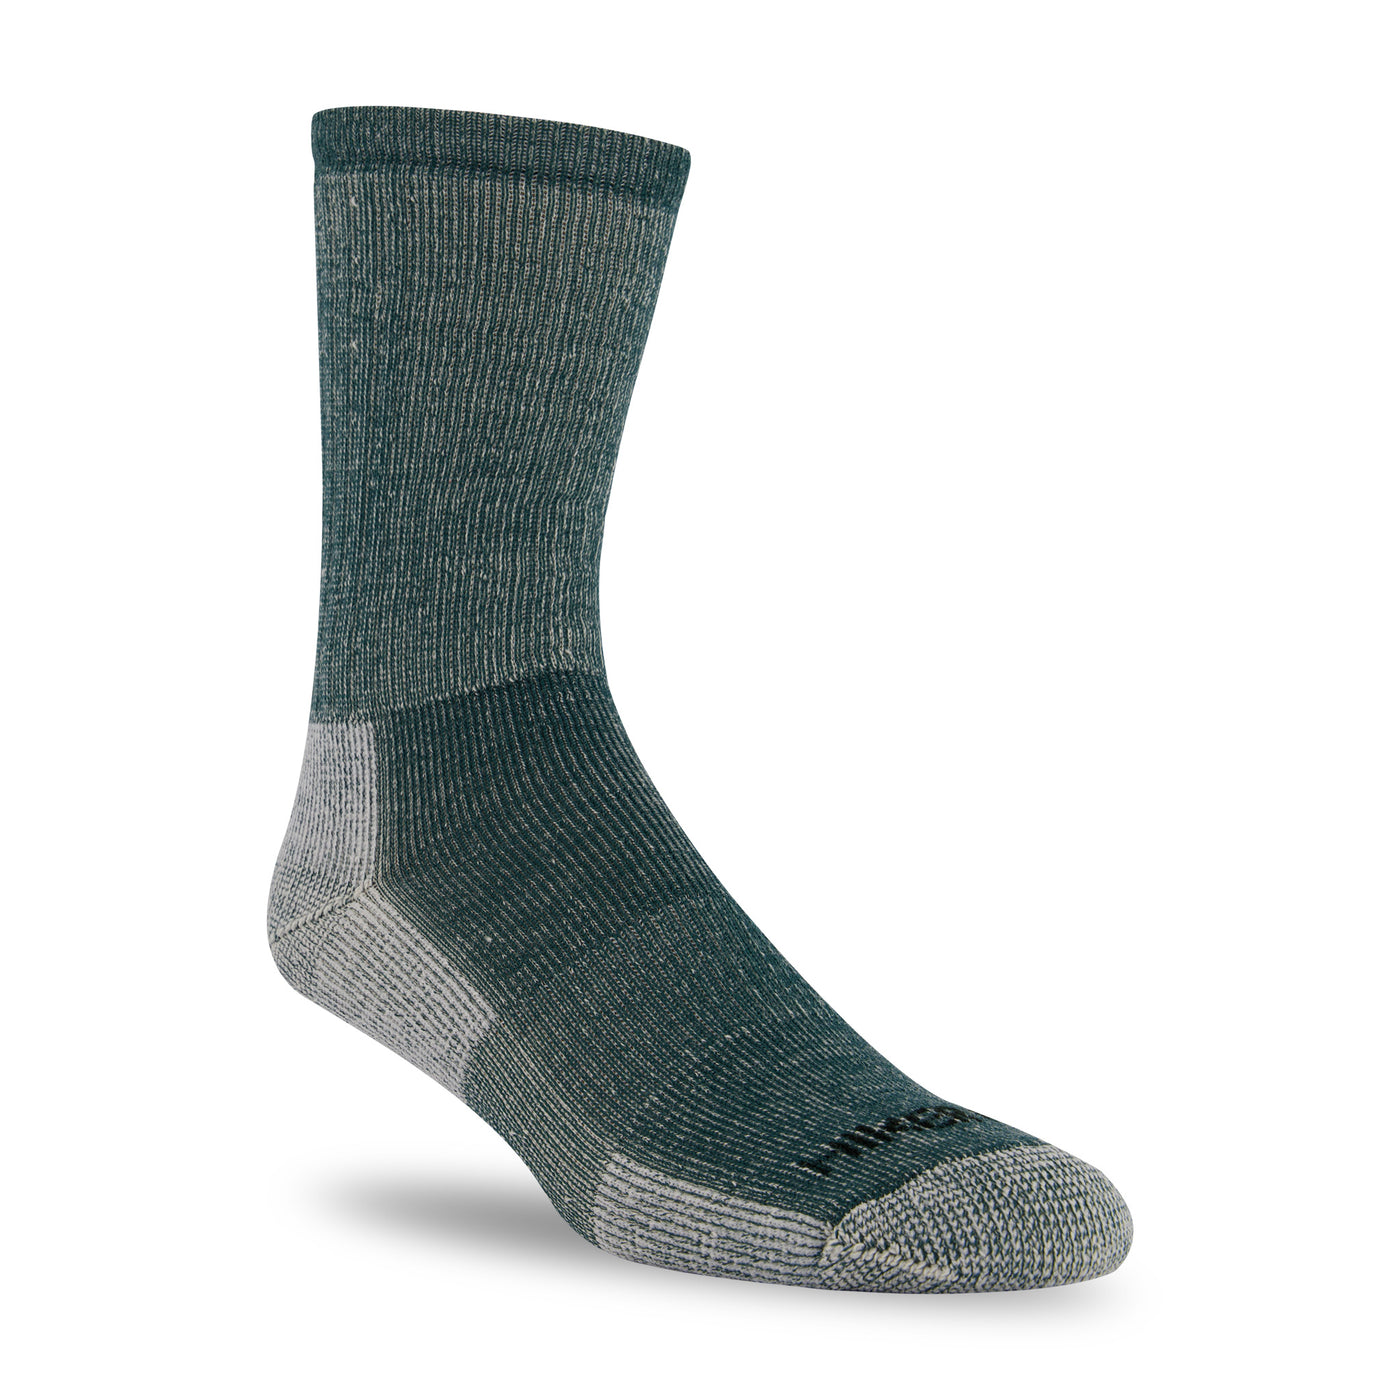 J.B. Field's "Hiker GX" 74% Merino Wool Hiking Sock (CLEARANCE)